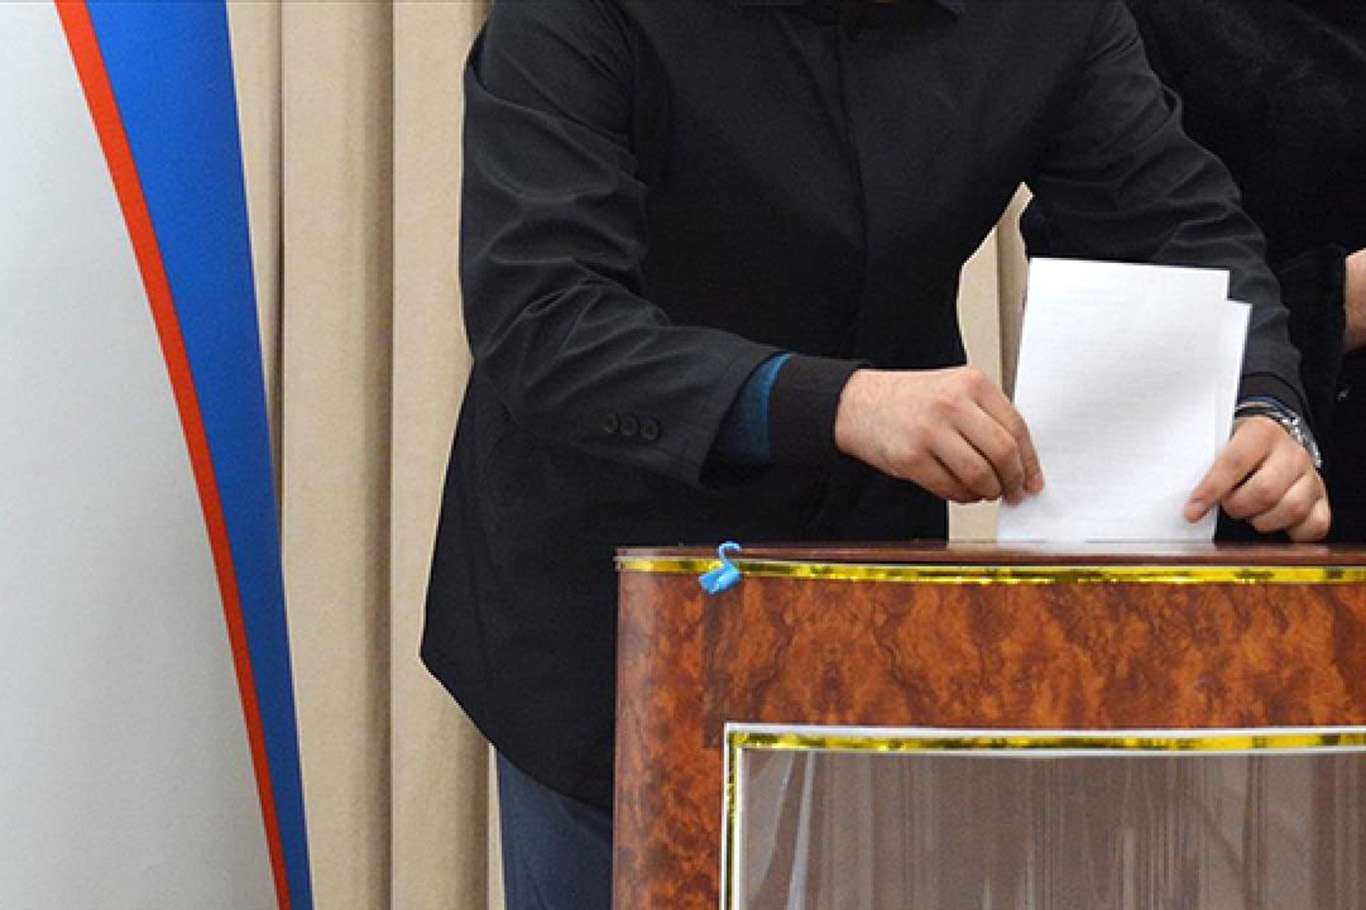 Uzbeks head to poll to elect their president